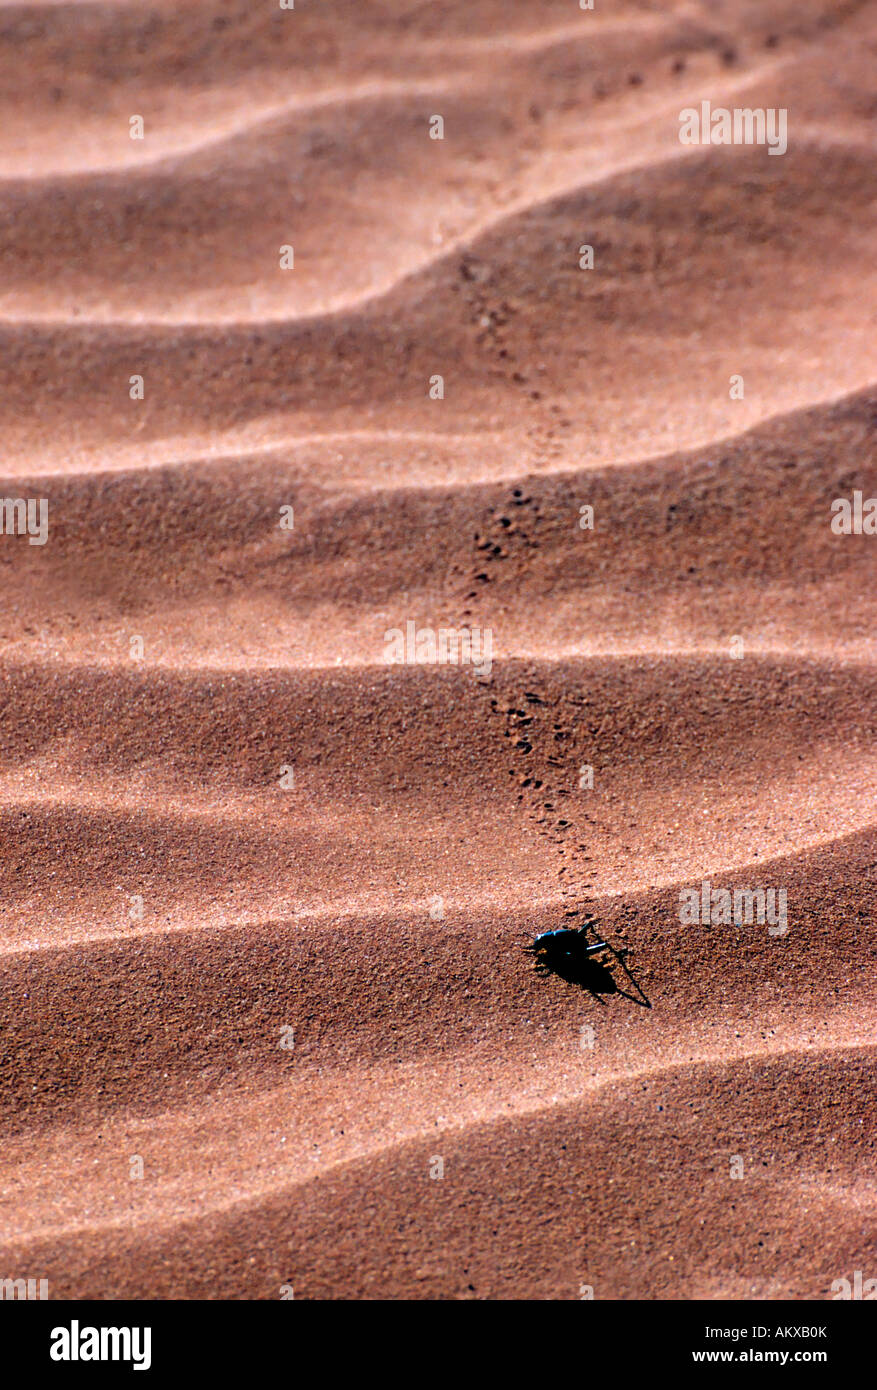 El Beetle de niebla (Onymacris unguicularis) deja huellas en la arena del desierto de Namib, Namibia Foto de stock